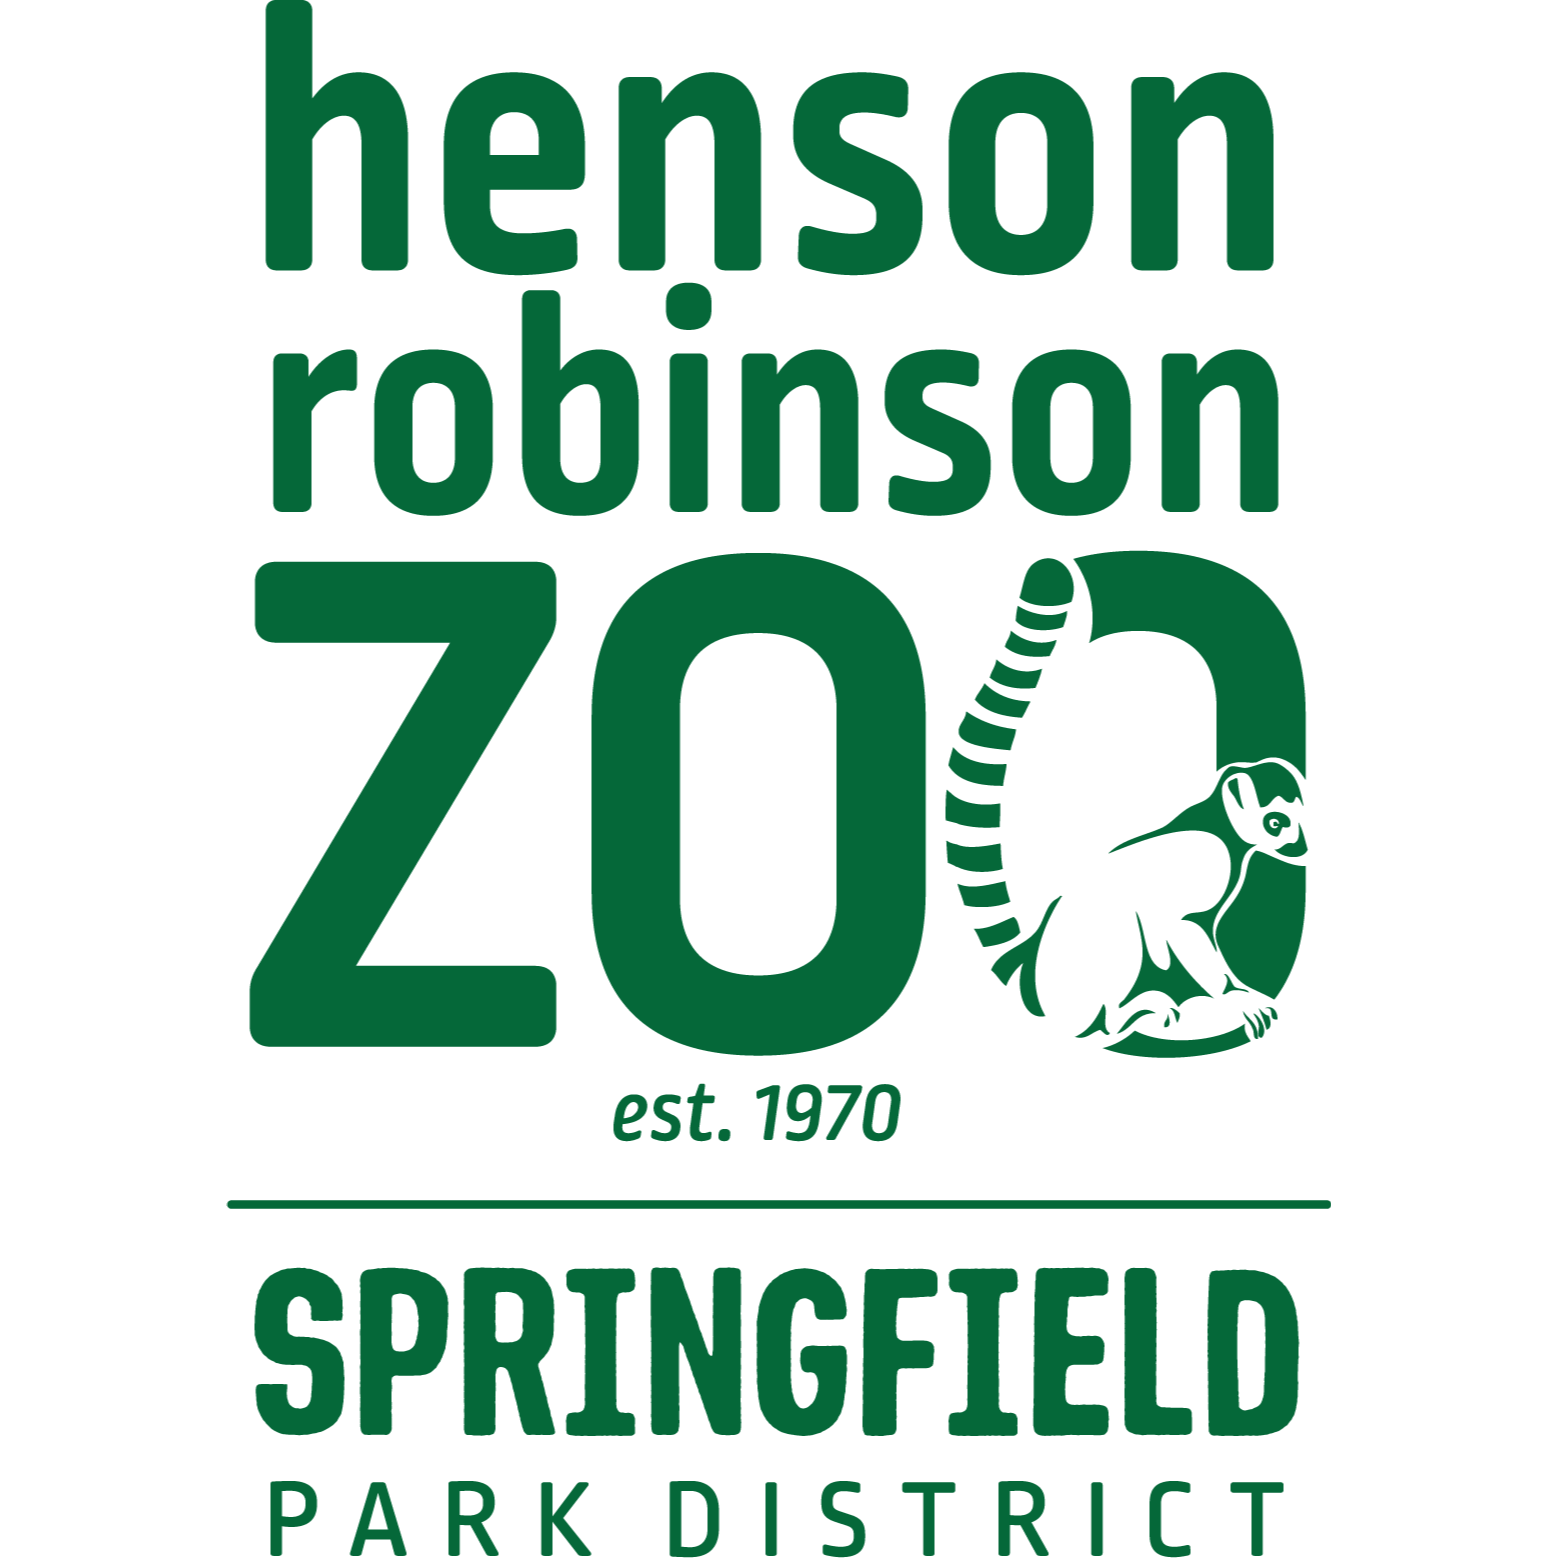 Henson Robinson Zoo - Springfield, IL 62712 - (217)585-1821 | ShowMeLocal.com